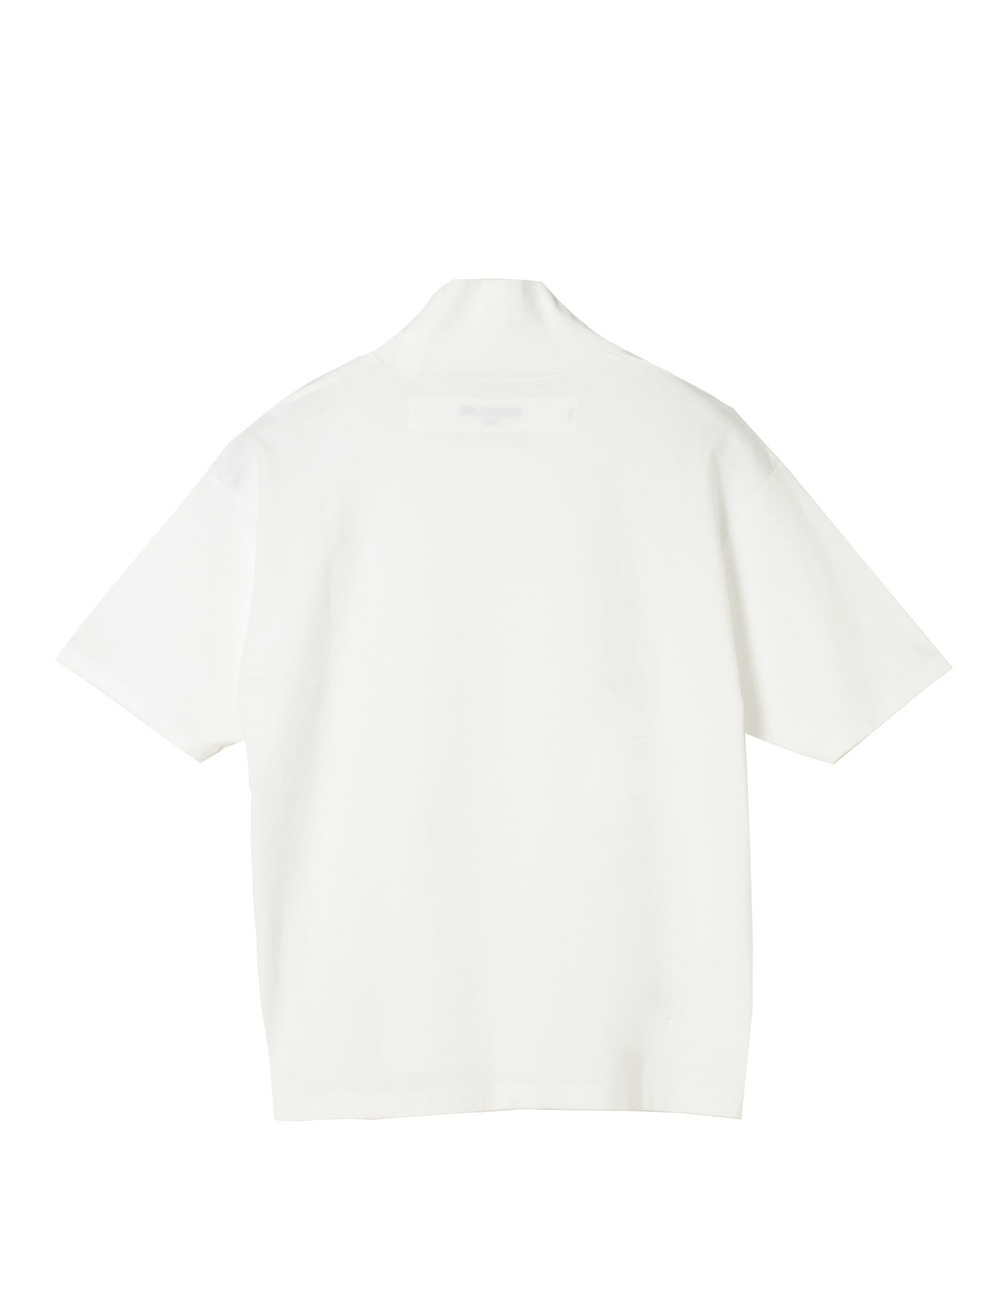 【WOMEN】コットンハイネックTシャツ 詳細画像 ホワイト 2